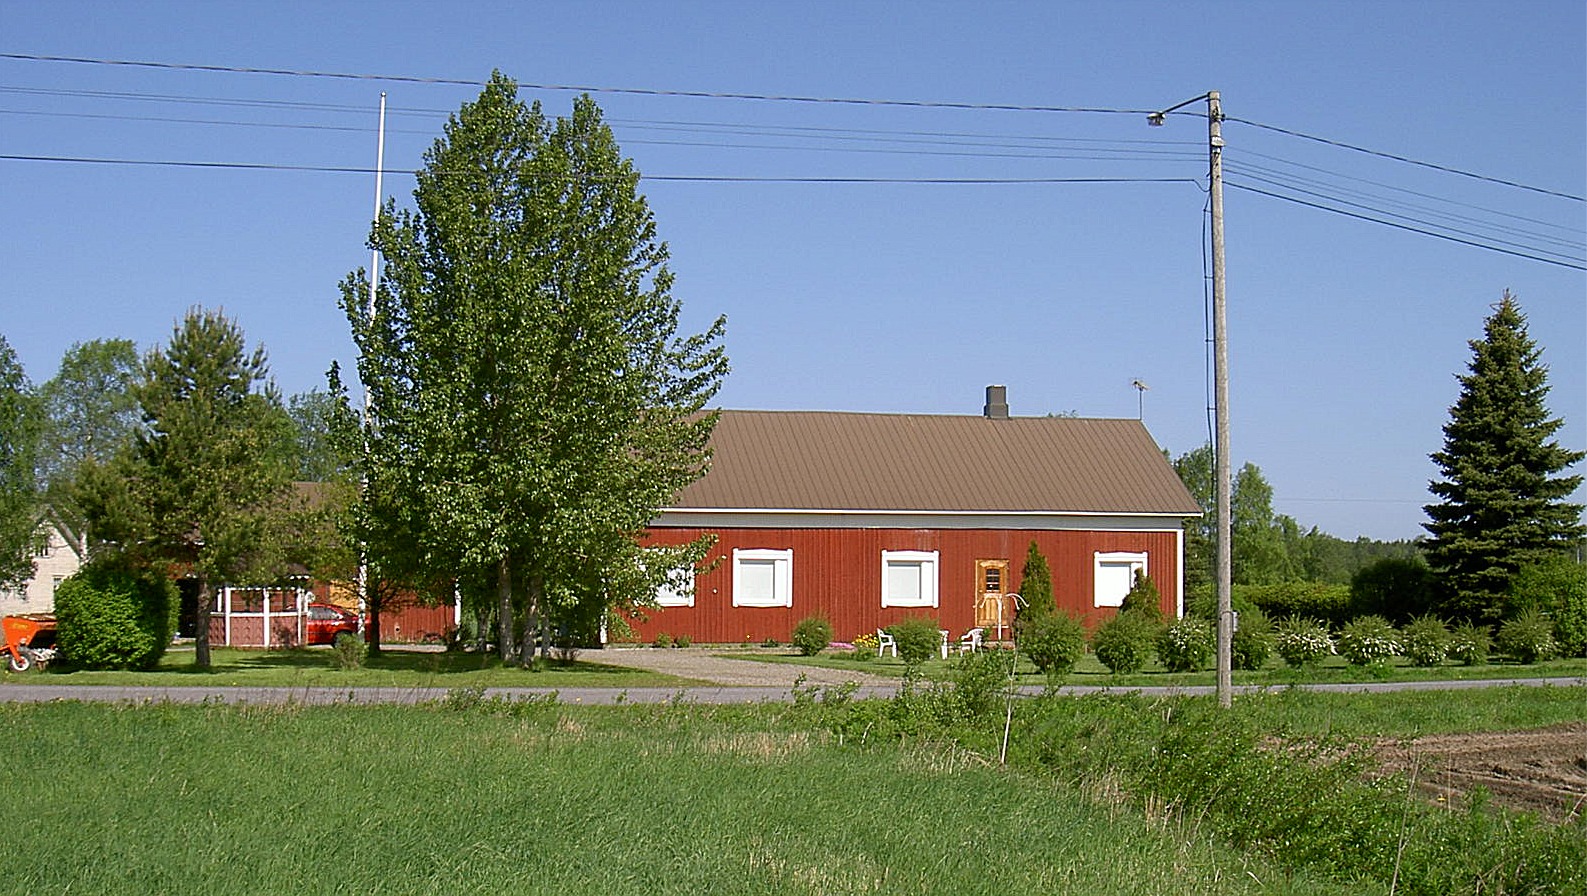 På 1980-talet byggdes gården om totalt och den byggdes i så att den då fick 2 lägenheter. Fotot taget från söder år 2003.